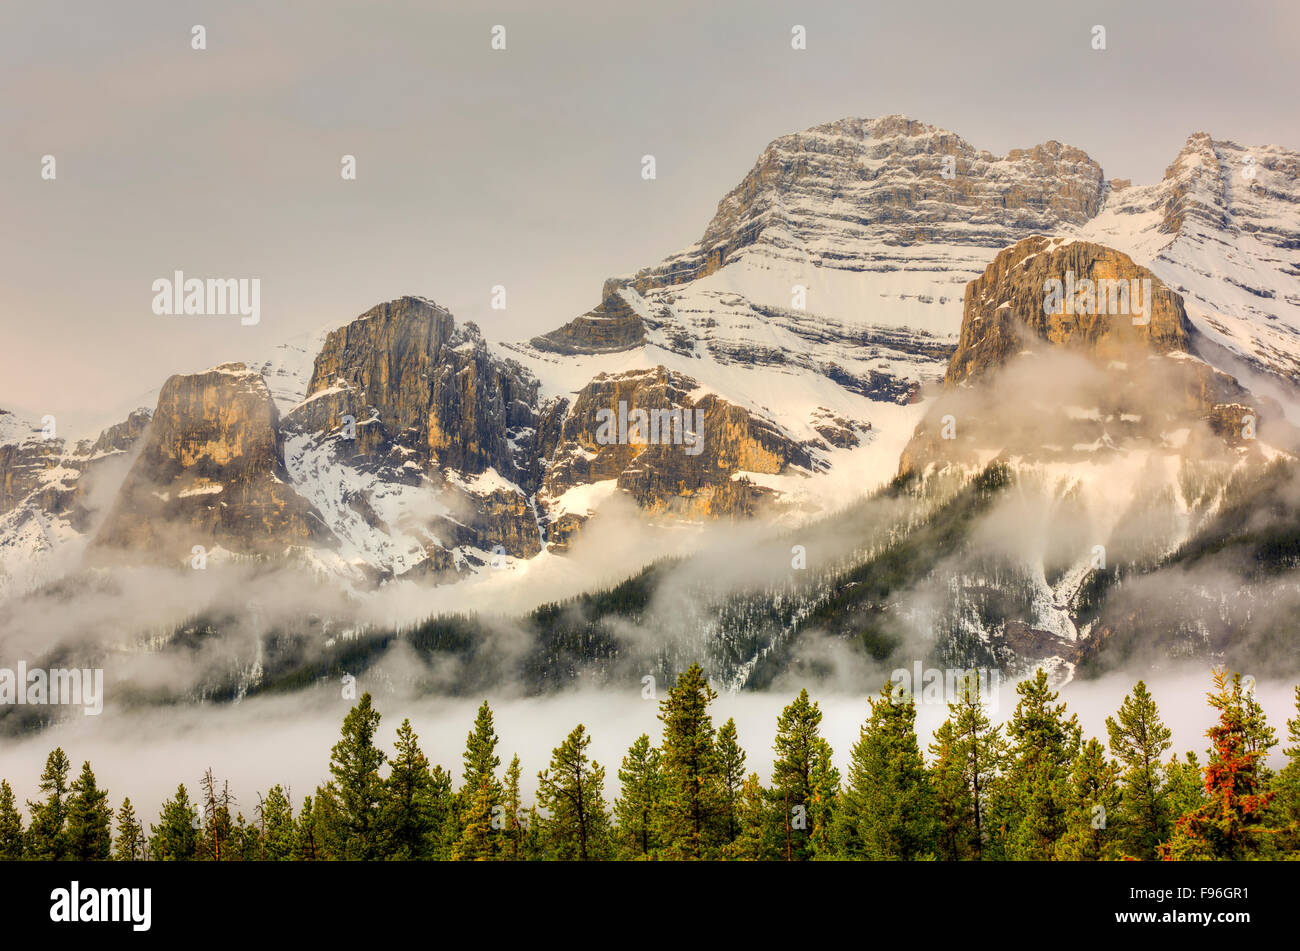 Schnee und Nebel gehüllt Mount Rundle Berge, Banff Nationalpark, Alberta, Kanada Stockfoto